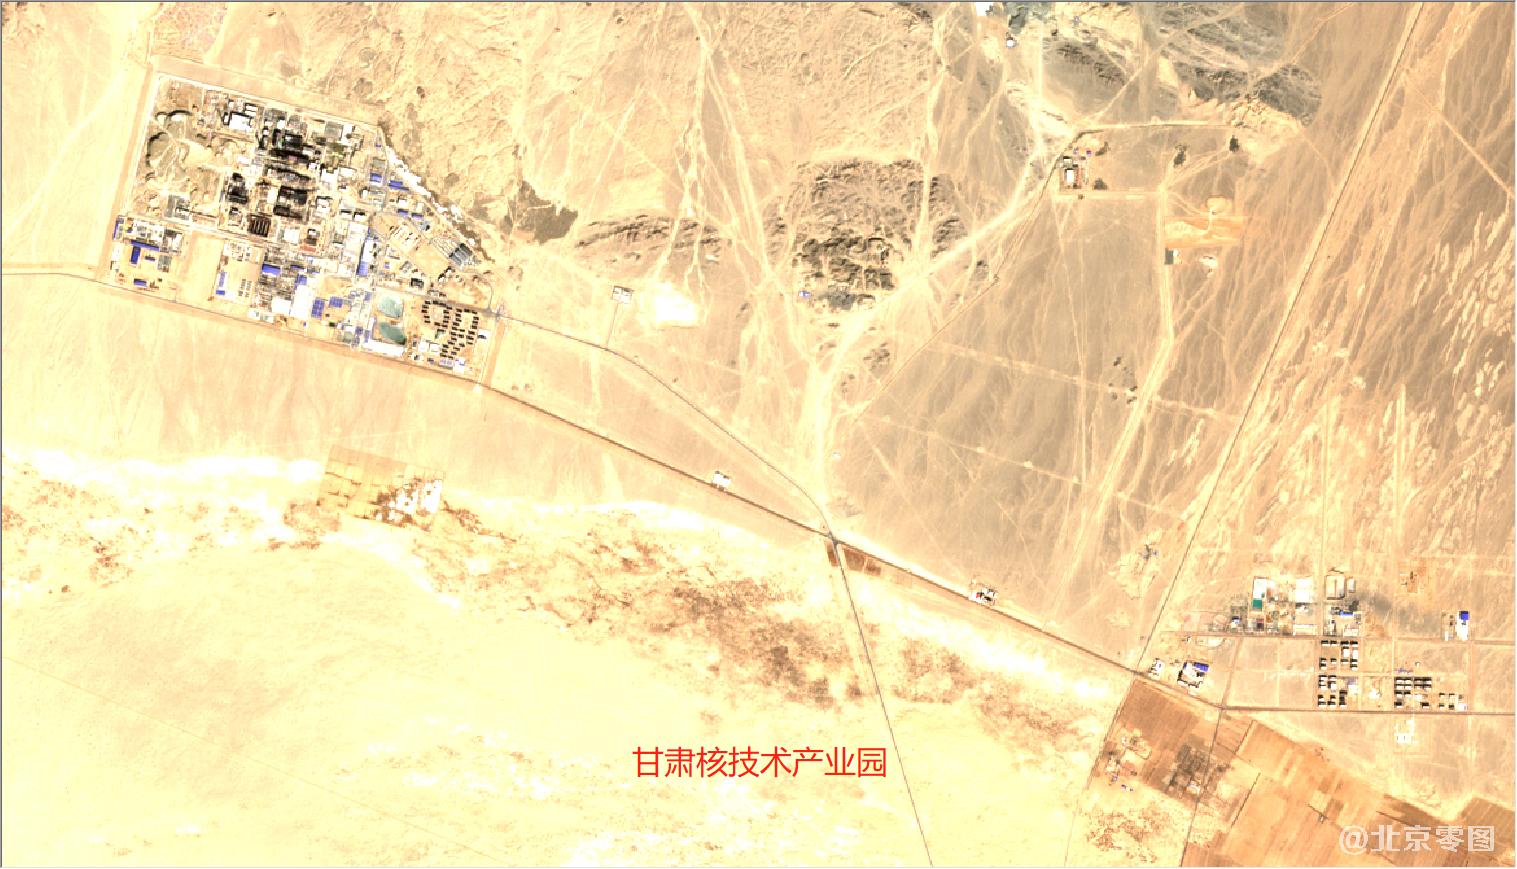 酒泉卫星发射中心及周边最新卫星图-甘肃核技术工业园